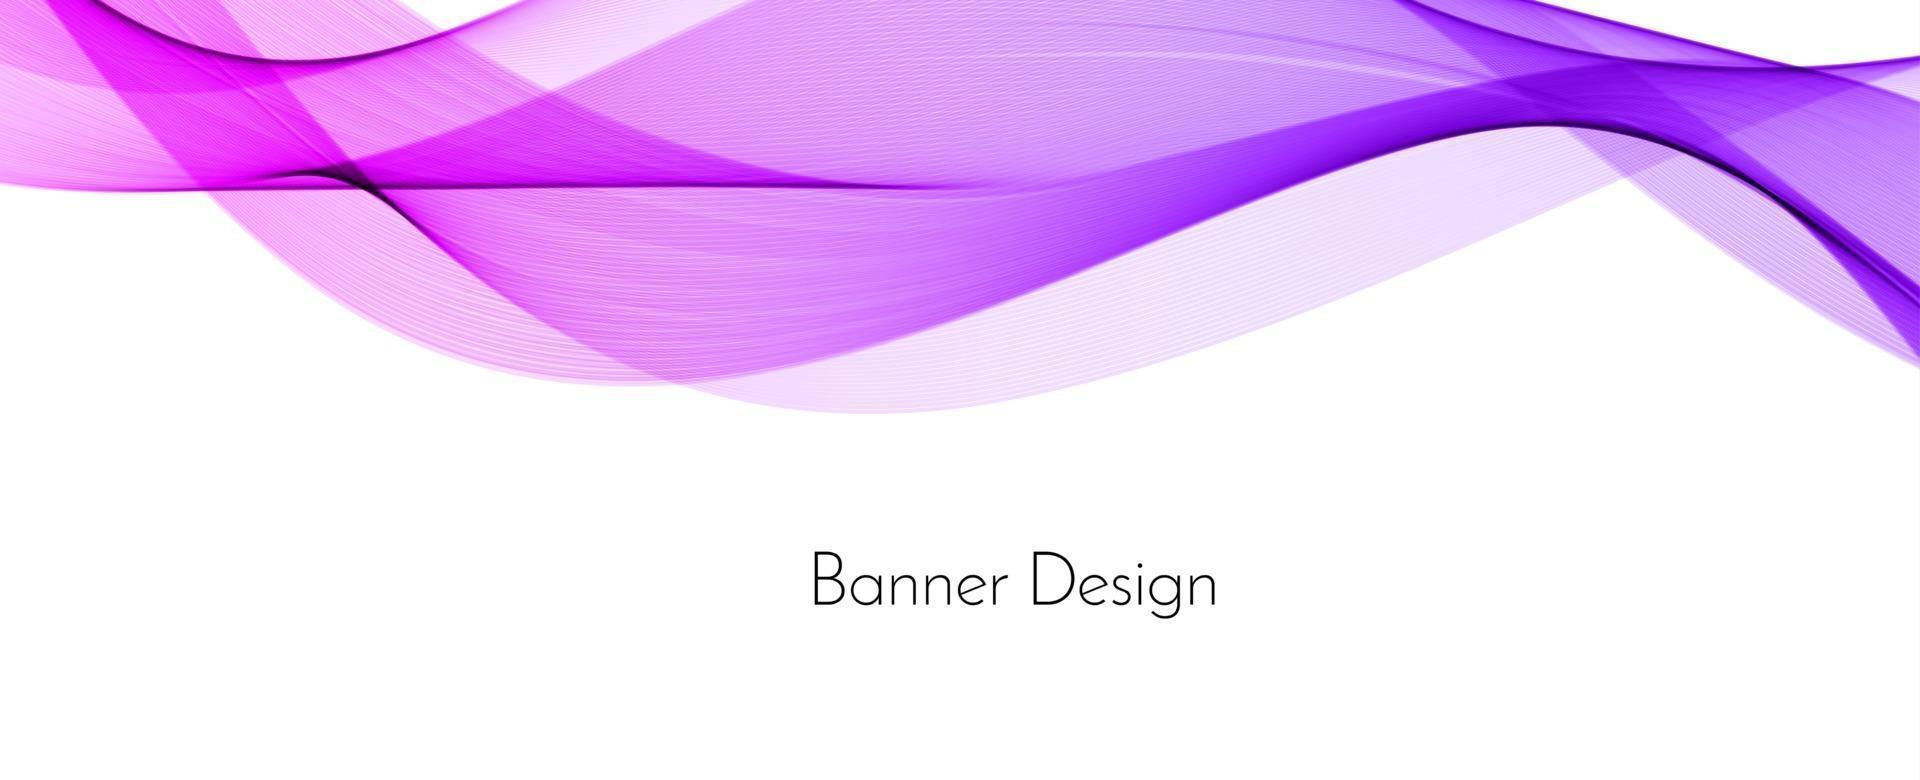 abstrakte bunte dekorative stilvolle moderne Welle Design Banner Hintergrund vektor